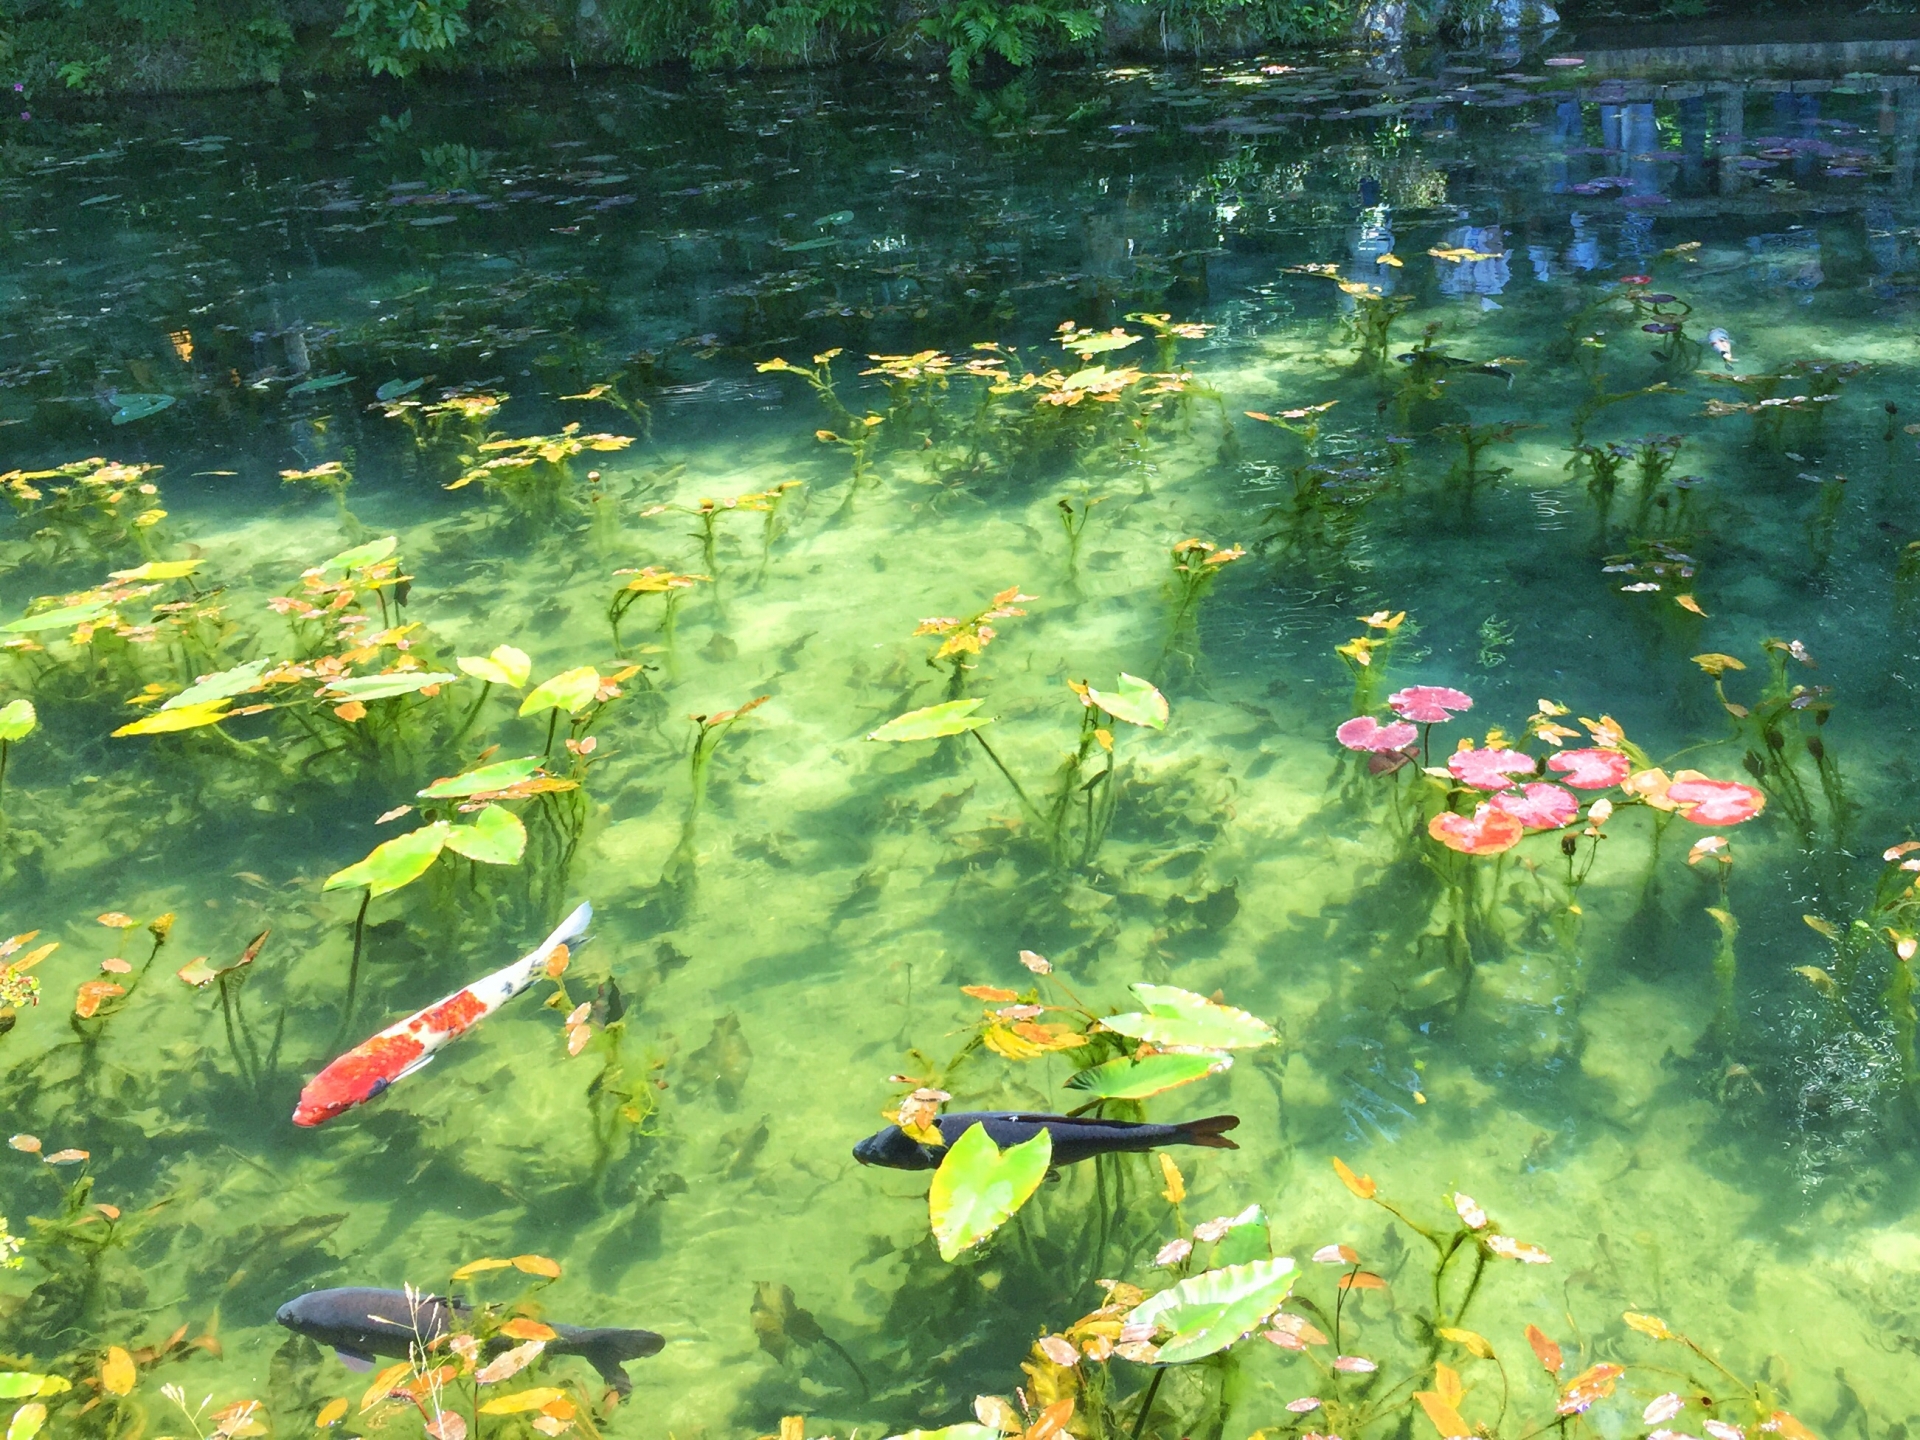 モネの池岐阜で紅葉もみじ 見頃時期や見どころなどご紹介 情報発信ブログサイト Blue Rose